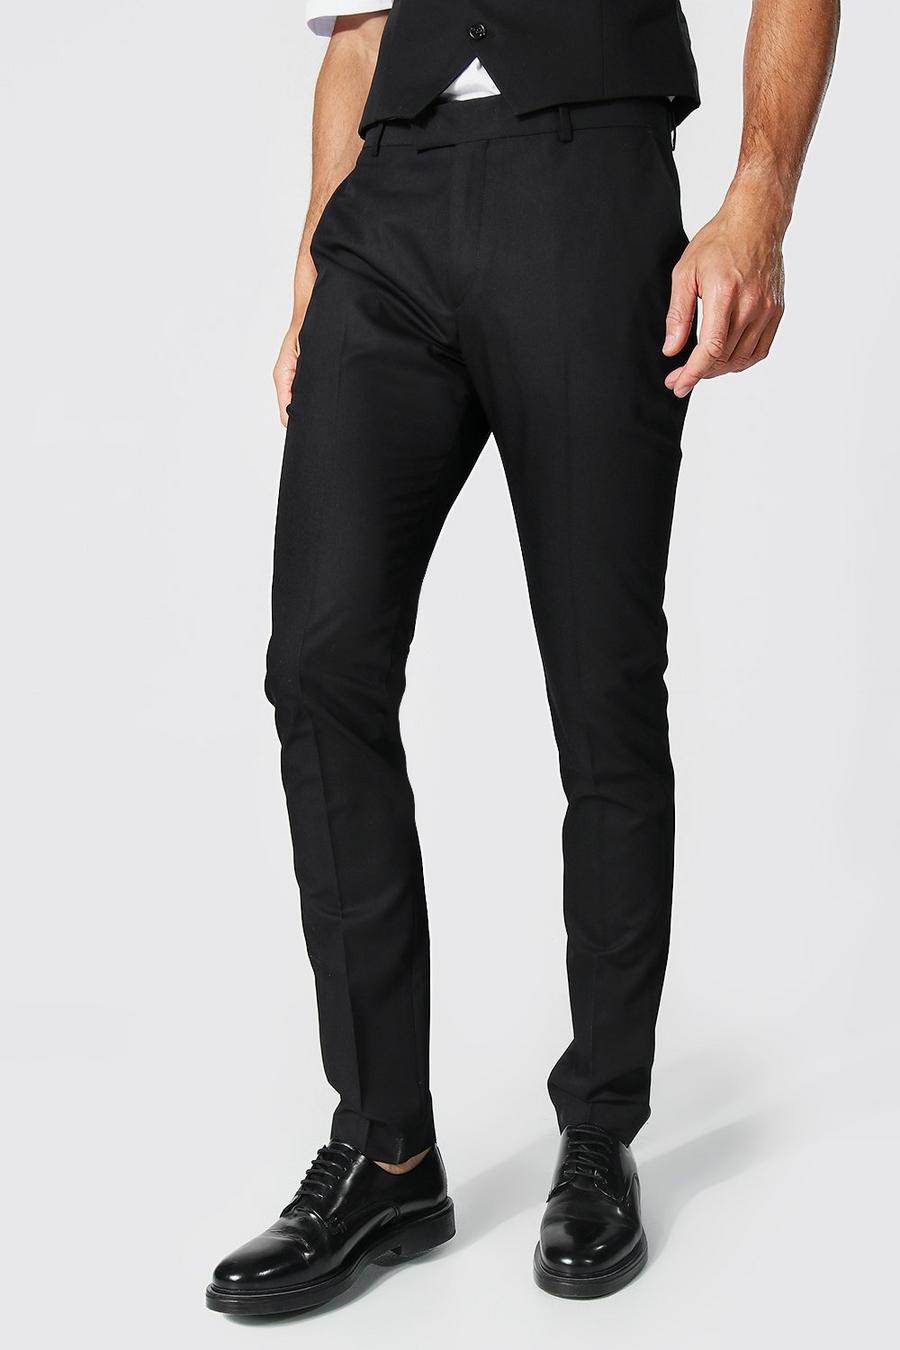 שחור nero מכנסי סקיני אלגנטיים לגברים גבוהים image number 1